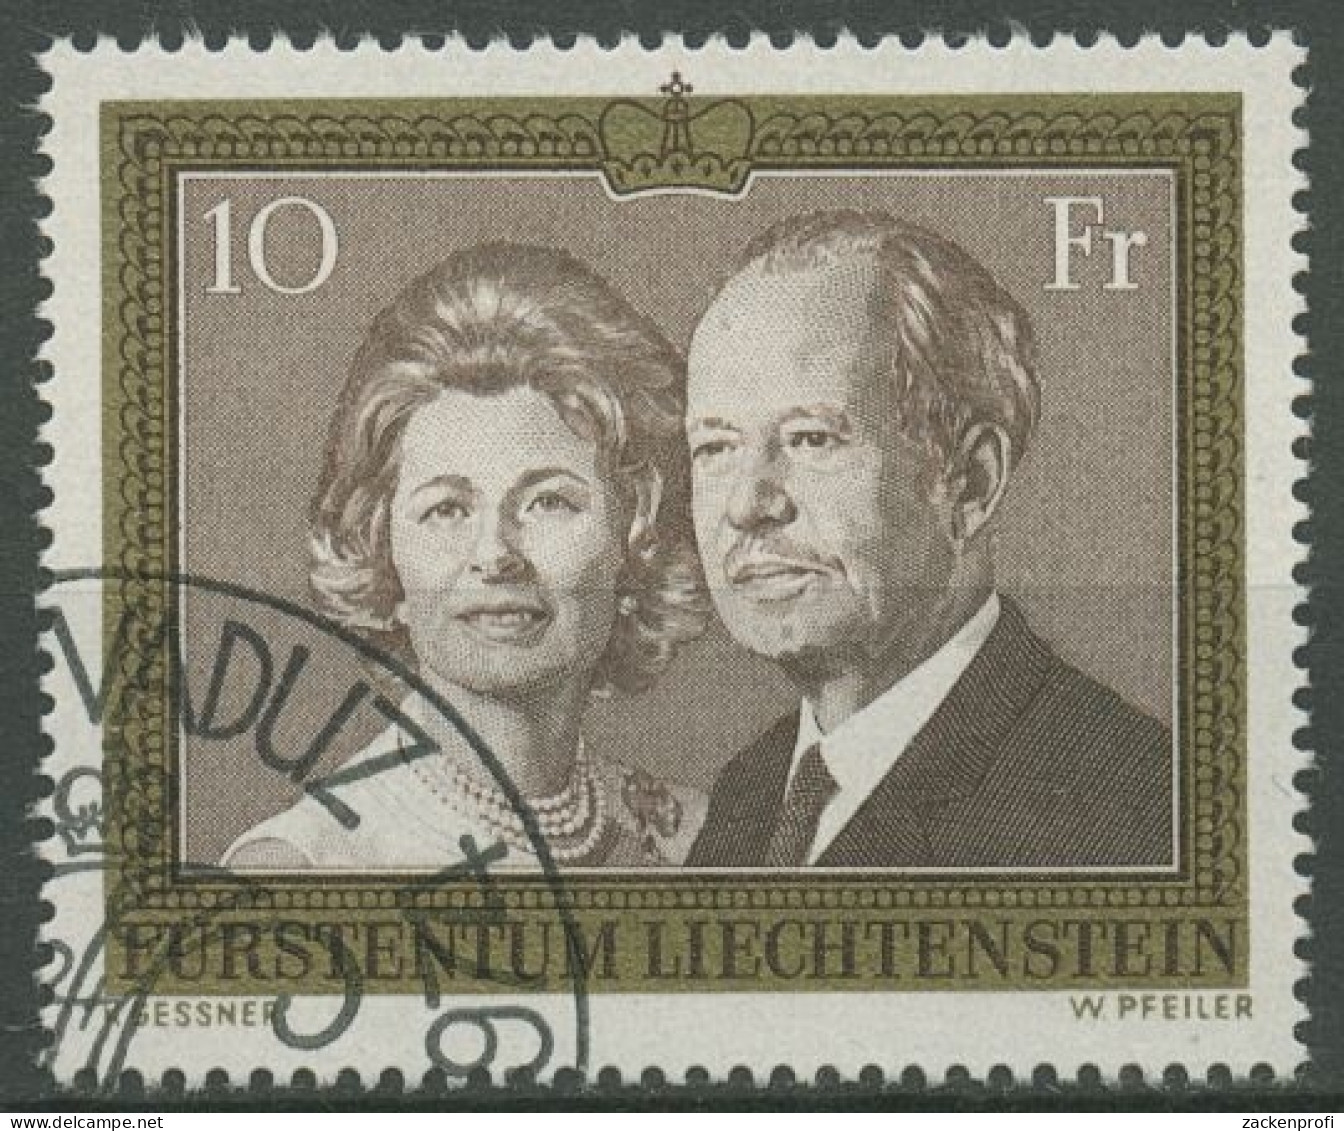 Liechtenstein 1974 Fürstenpaar Franz Josef II. Fürstin Gina 614 Gestempelt - Used Stamps